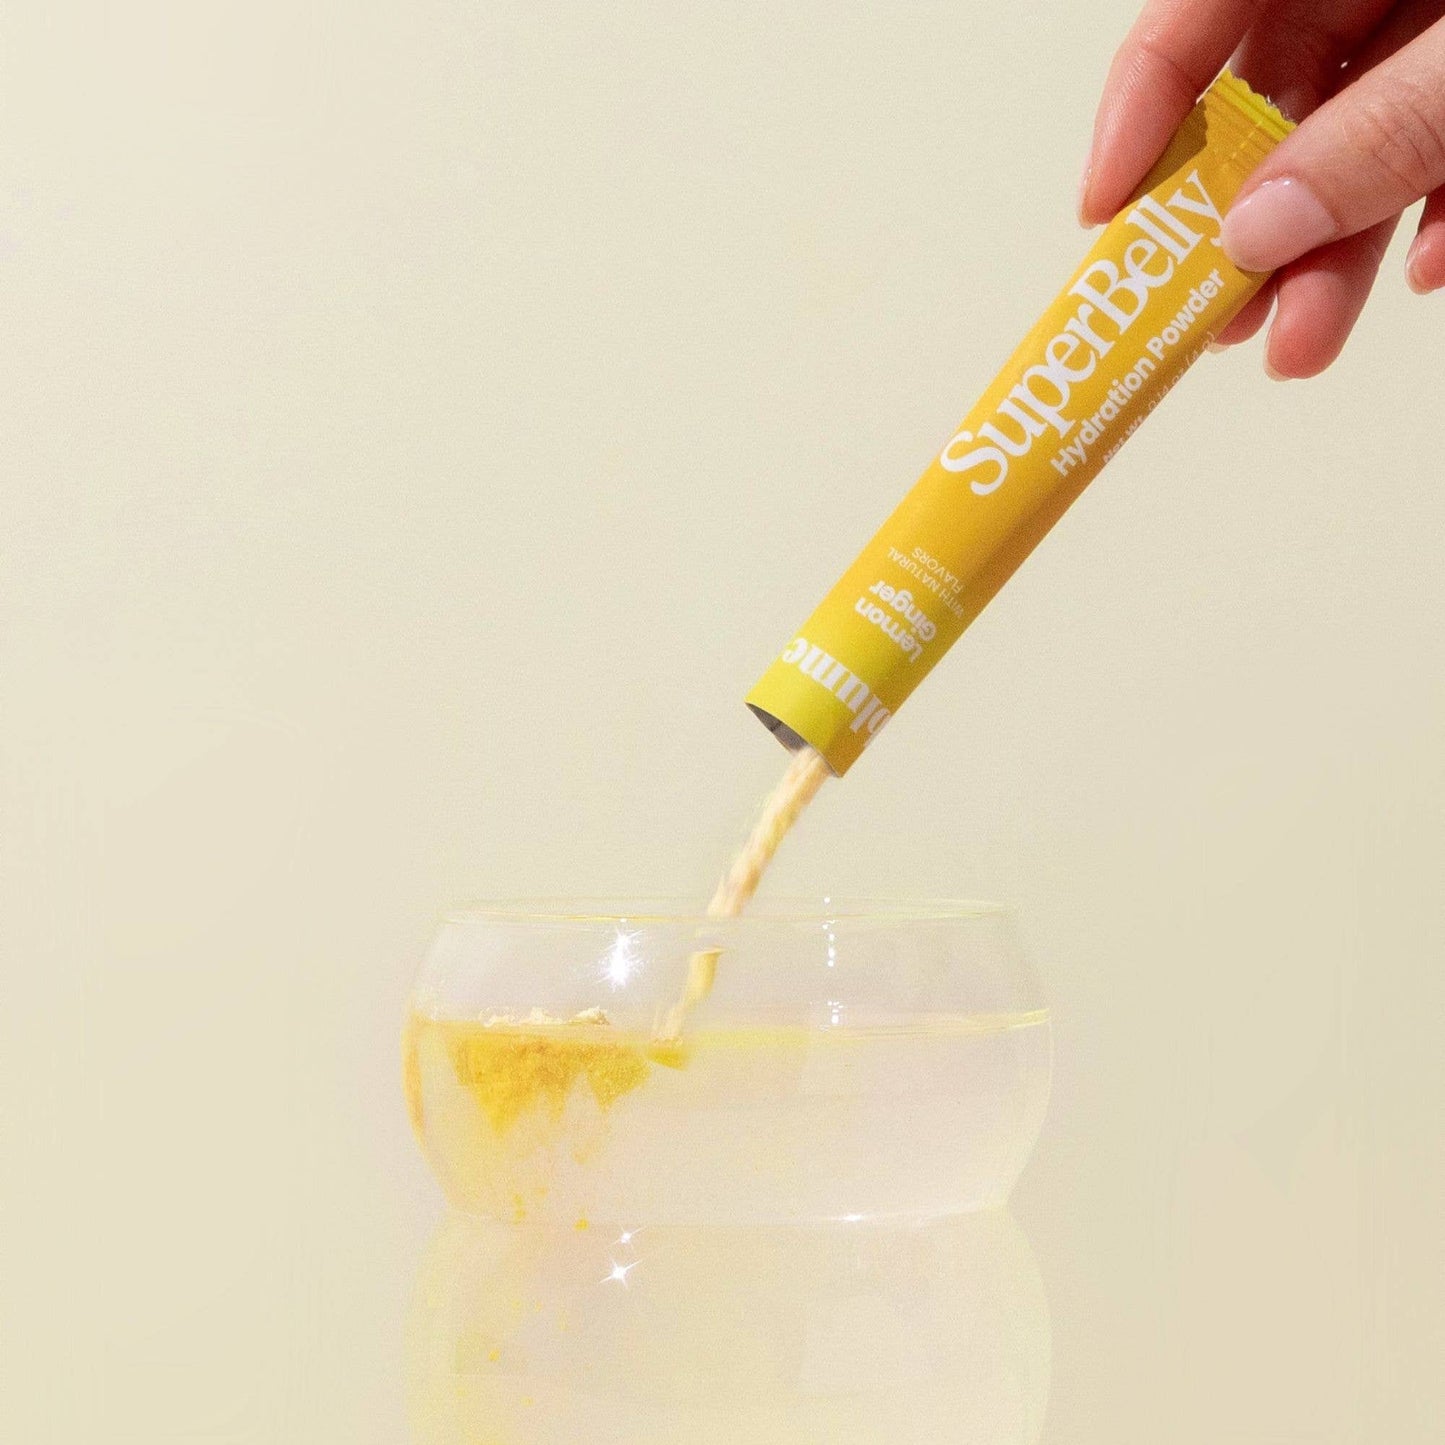 Blume- SuperBelly Hydration & Gut Mix, Lemon Ginger